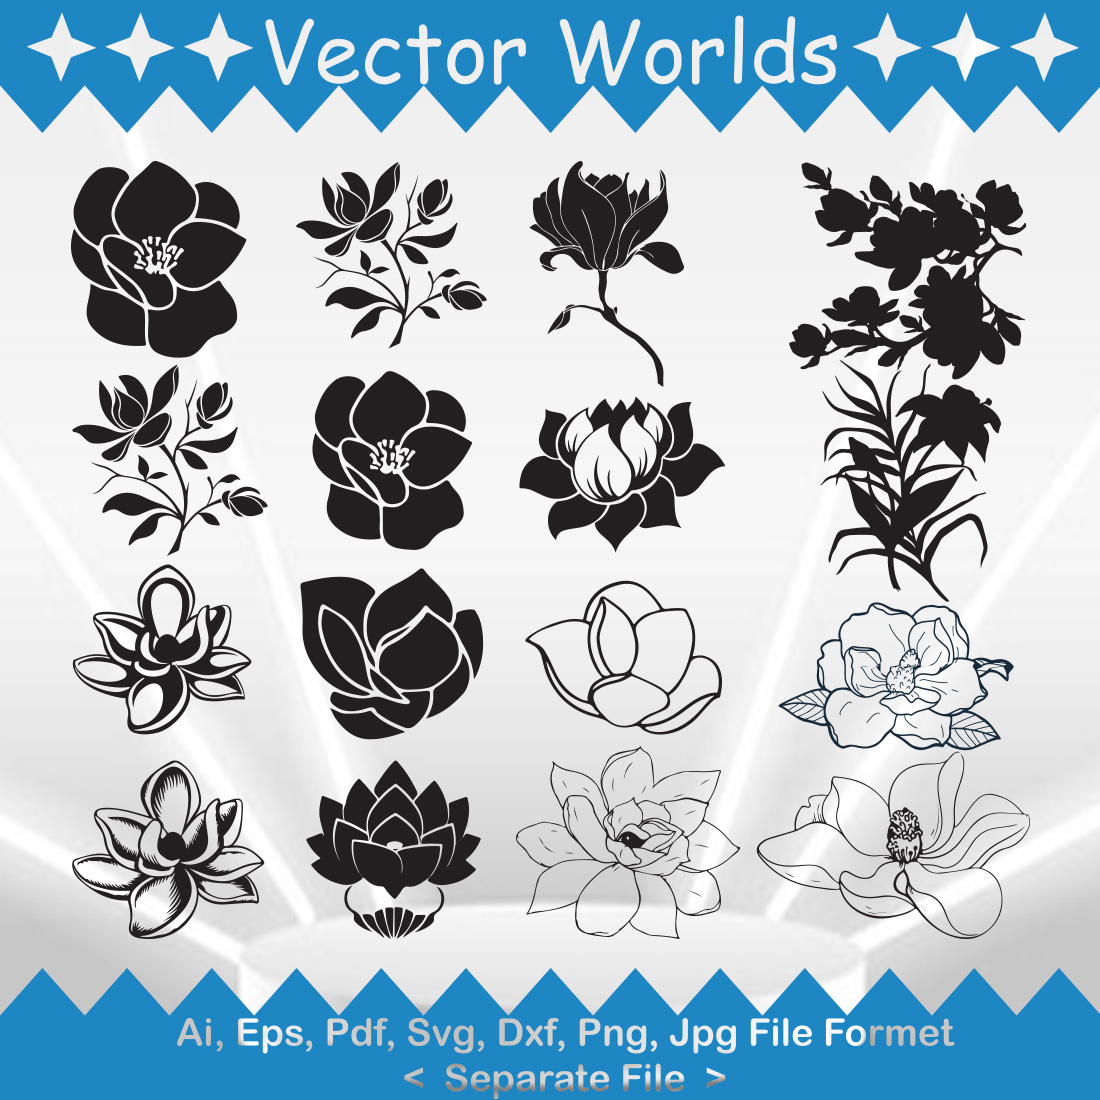 Magnolia SVG Vector Design cover image.